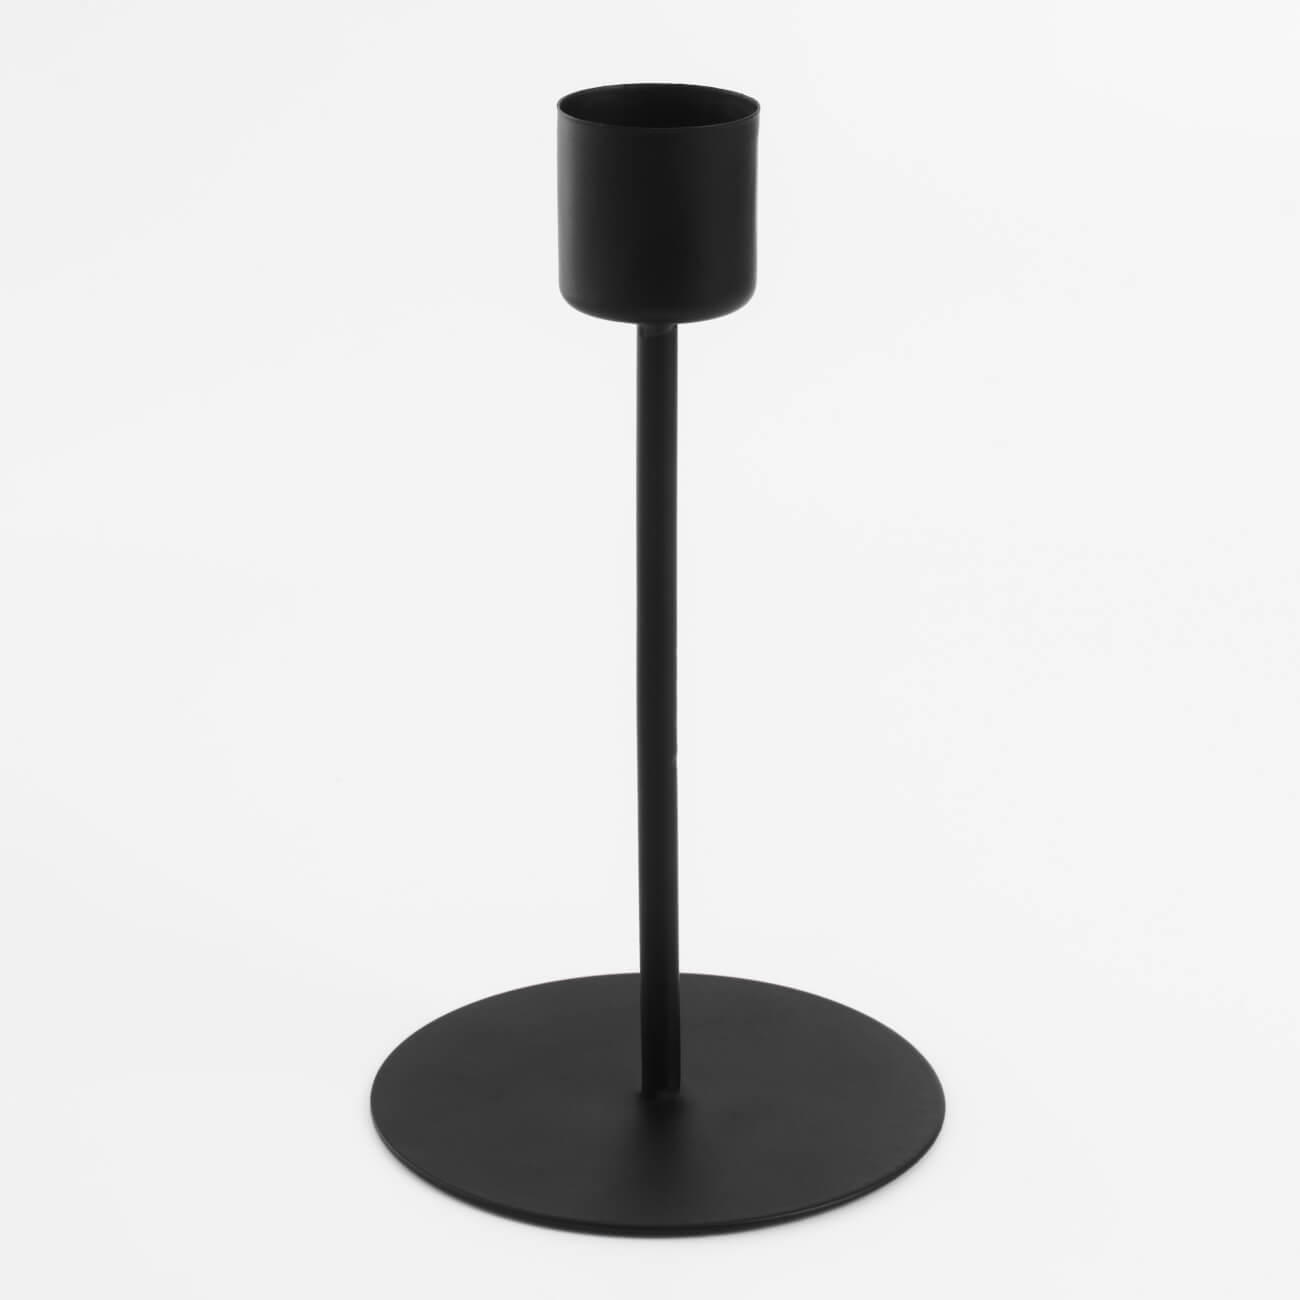 Подсвечник, 15 см, для тонкой свечи, на ножке, металл, черный, Black style декоративный подсвечник